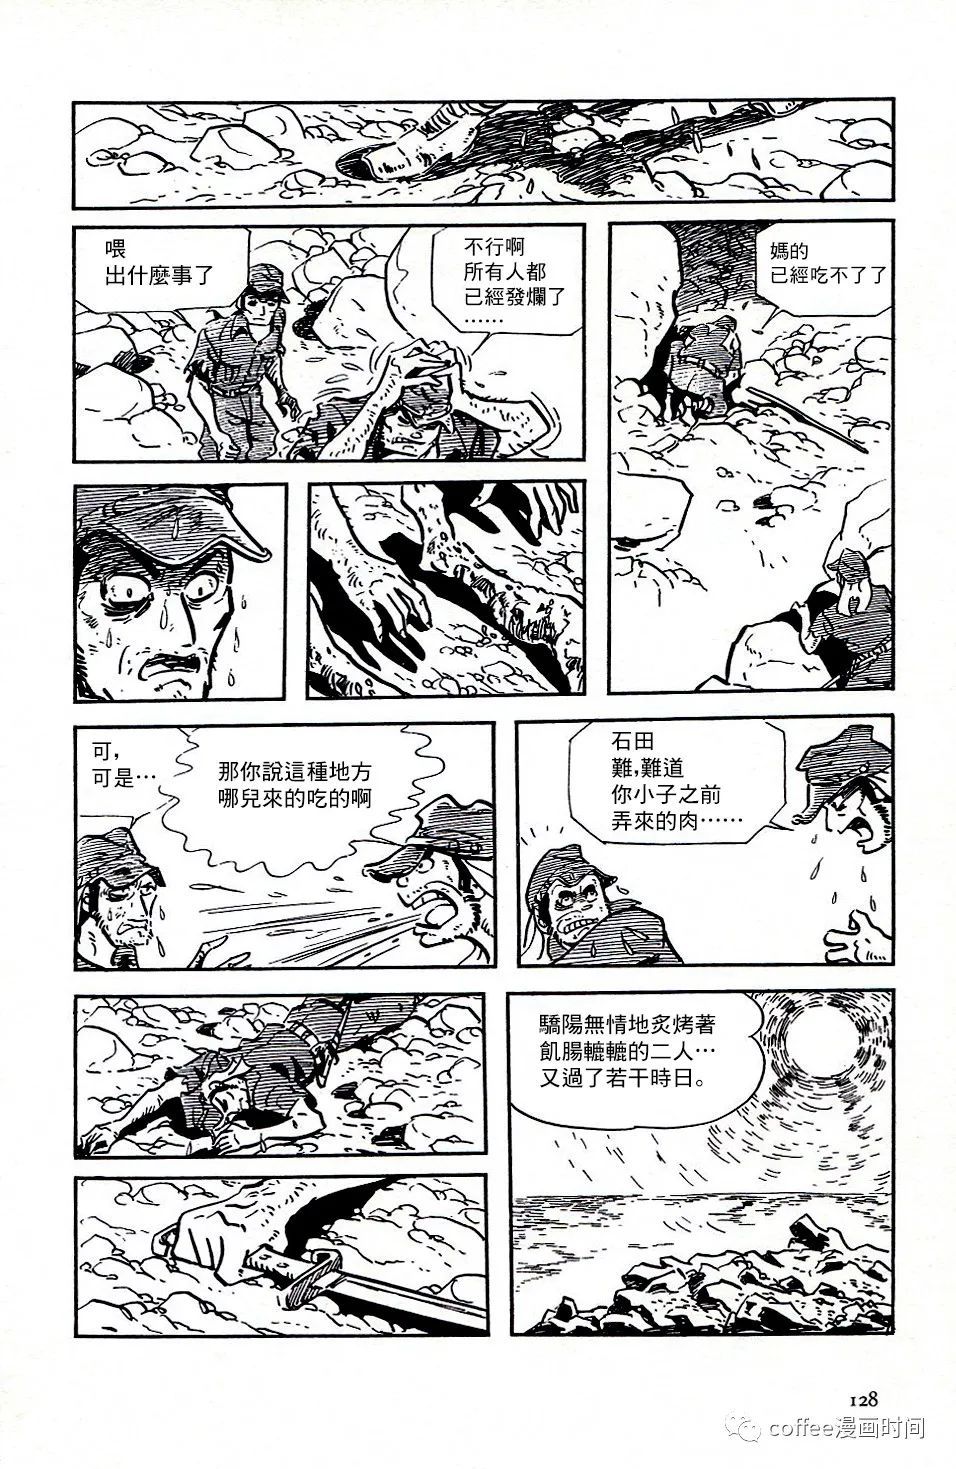 日本短篇漫畫傑作集 - 白土三平《戰爭》 - 4